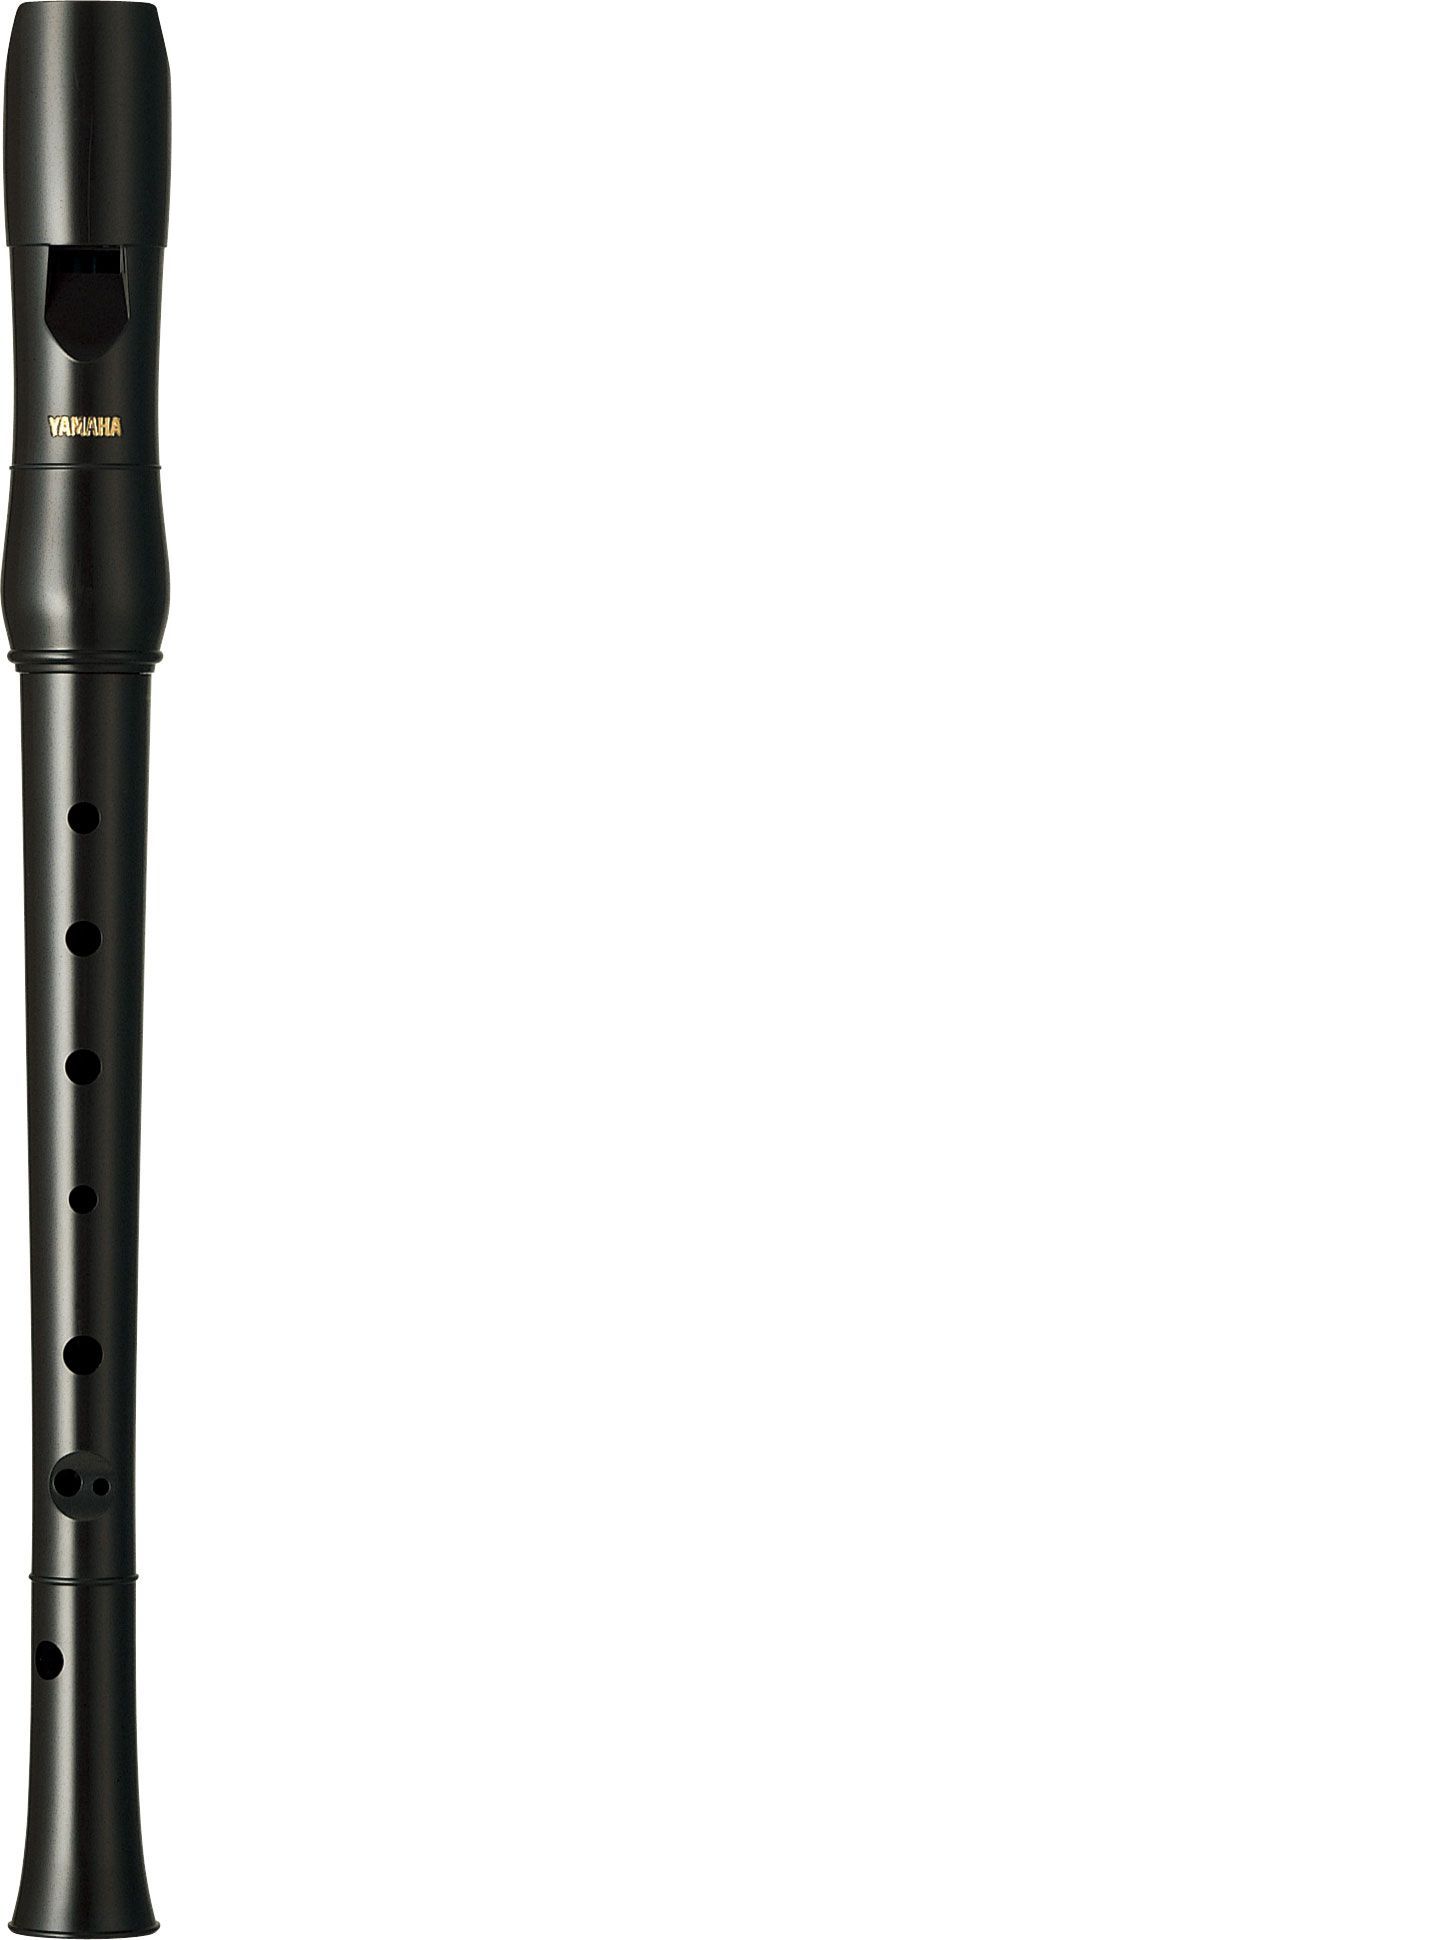 Flauta sopranino dulce YAMAHA modelo YRN 22 B